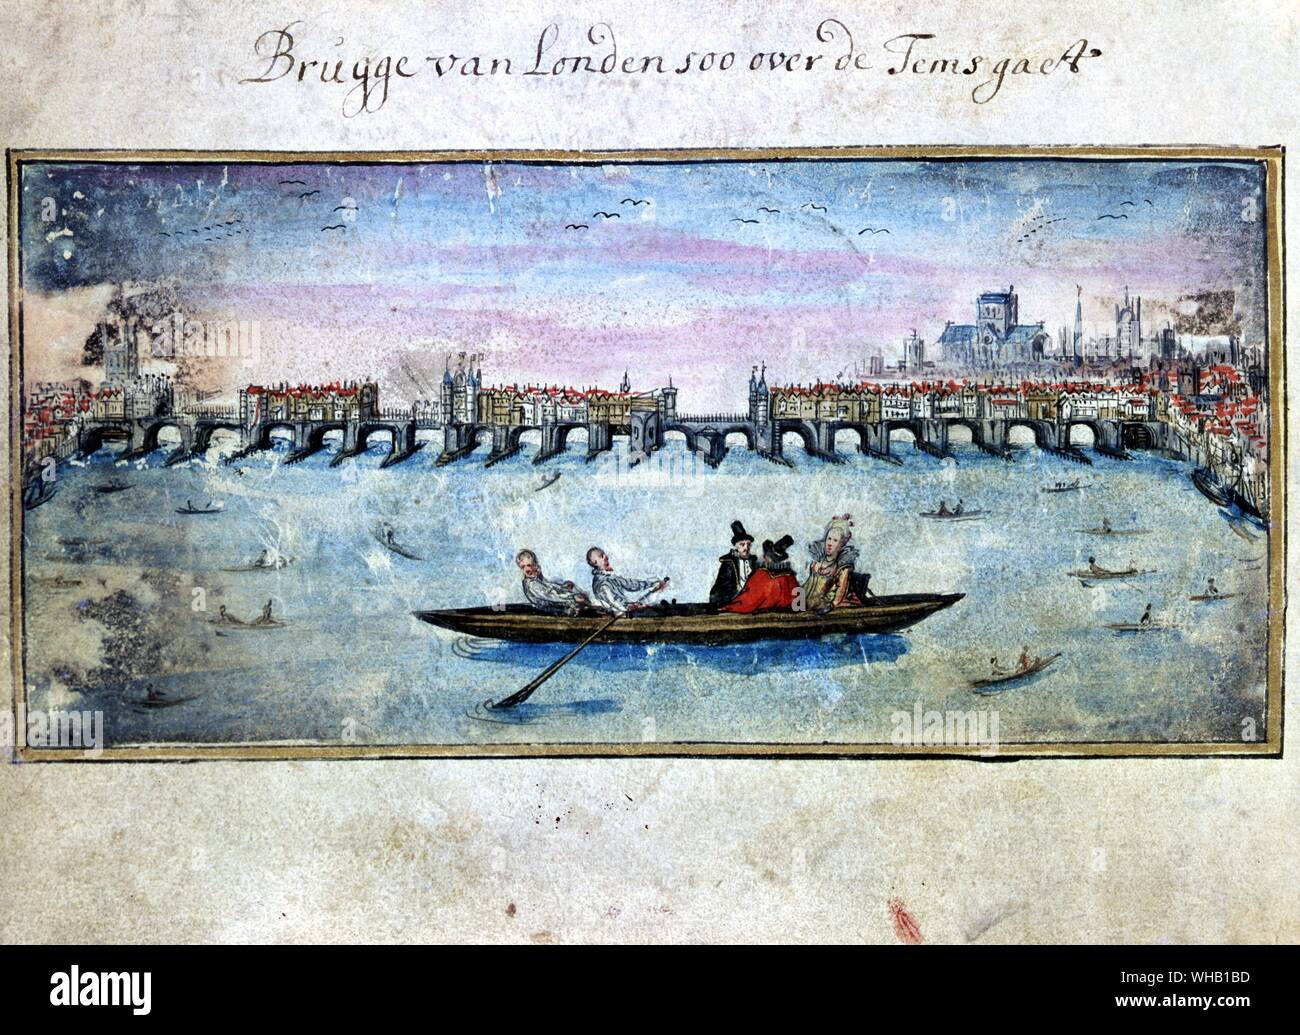 El río Támesis y el Puente de Londres. Van Meer c.1614. Brujas van a través de Temsgaet Londen soo. La Biblioteca de la Universidad de Edimburgo. Foto de stock